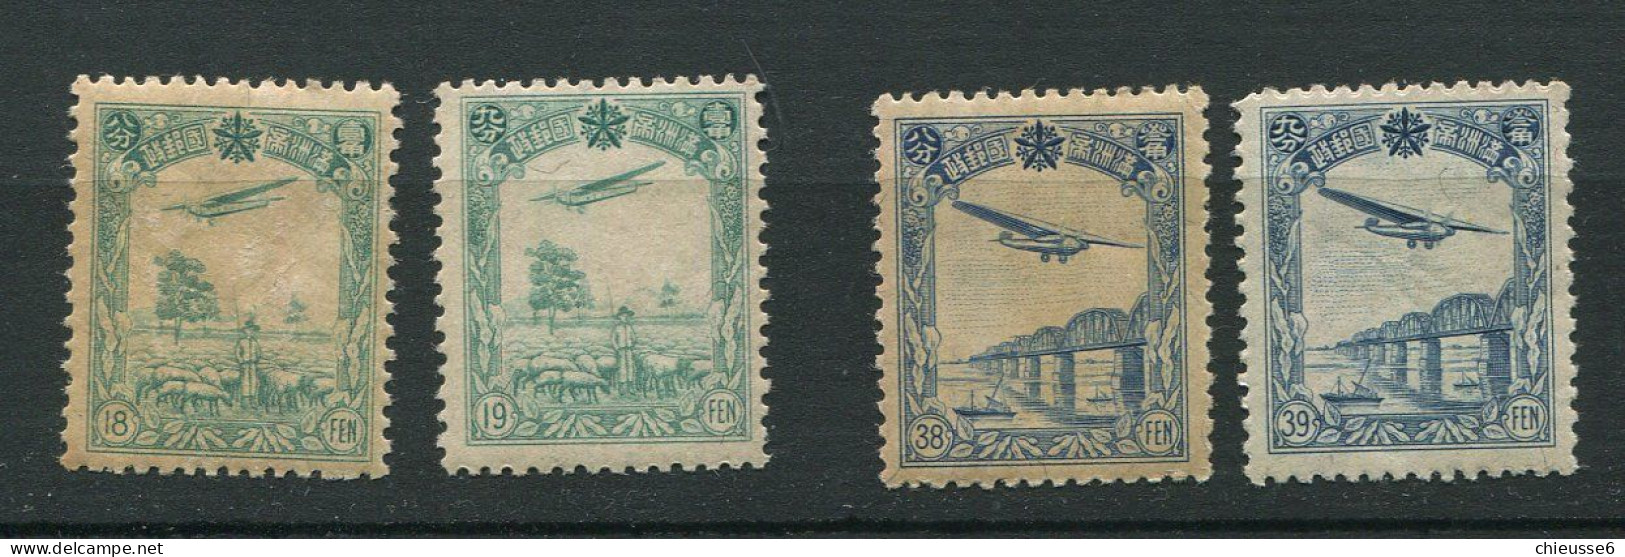 Mandchourie ** PA 1 à 4 (n° 2 Adhérences Au Dos)  - Avion En Vol - Mantsjoerije 1927-33